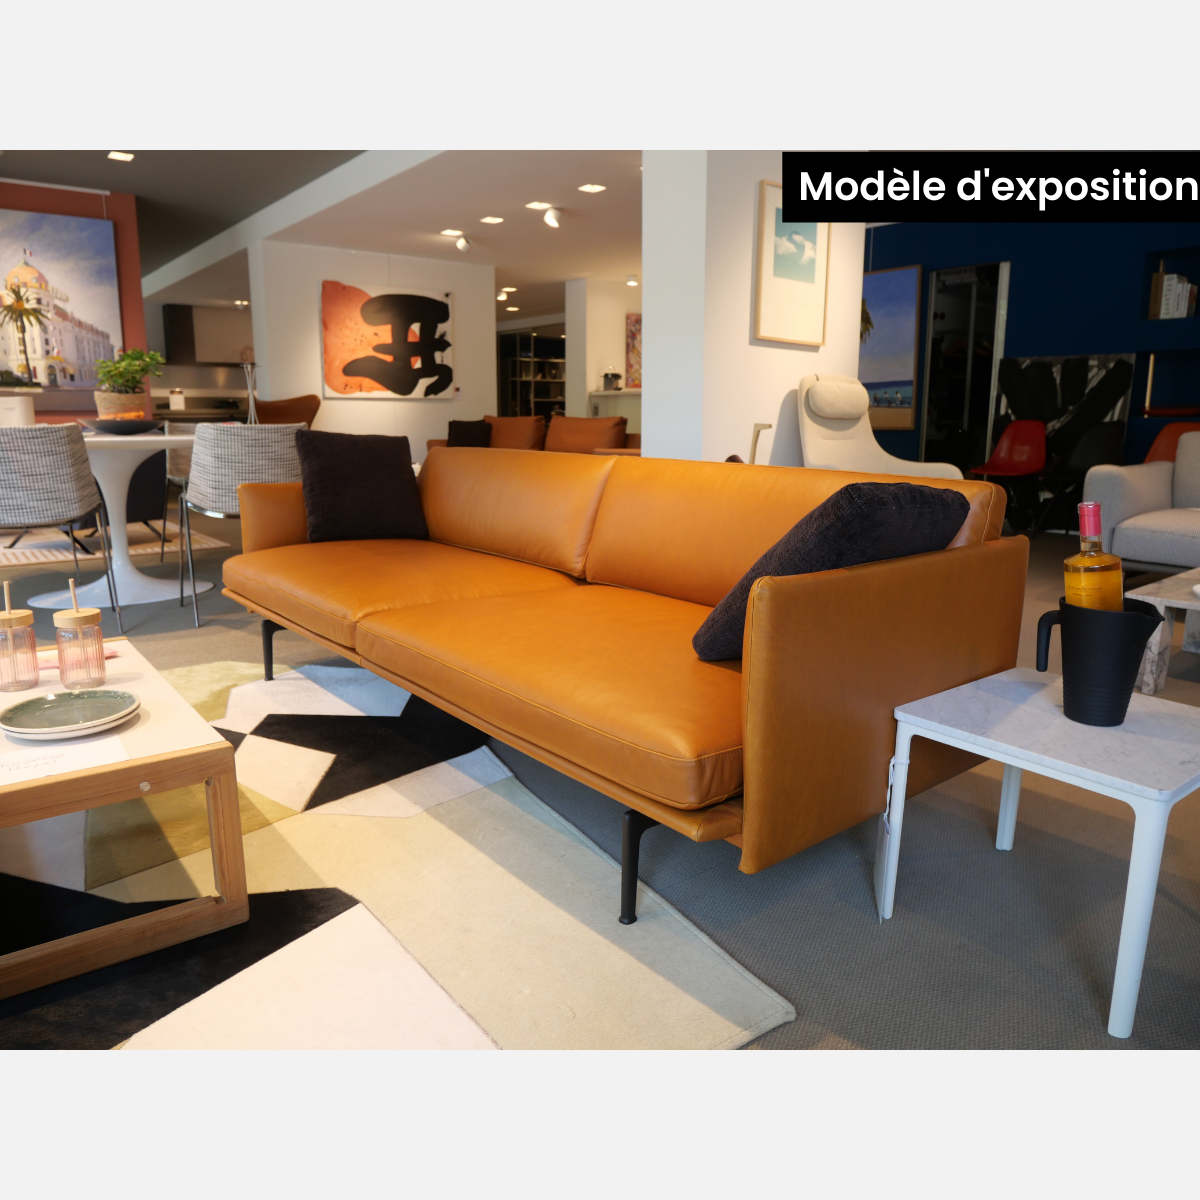 Modèle d'exposition du canapé outline à Nice